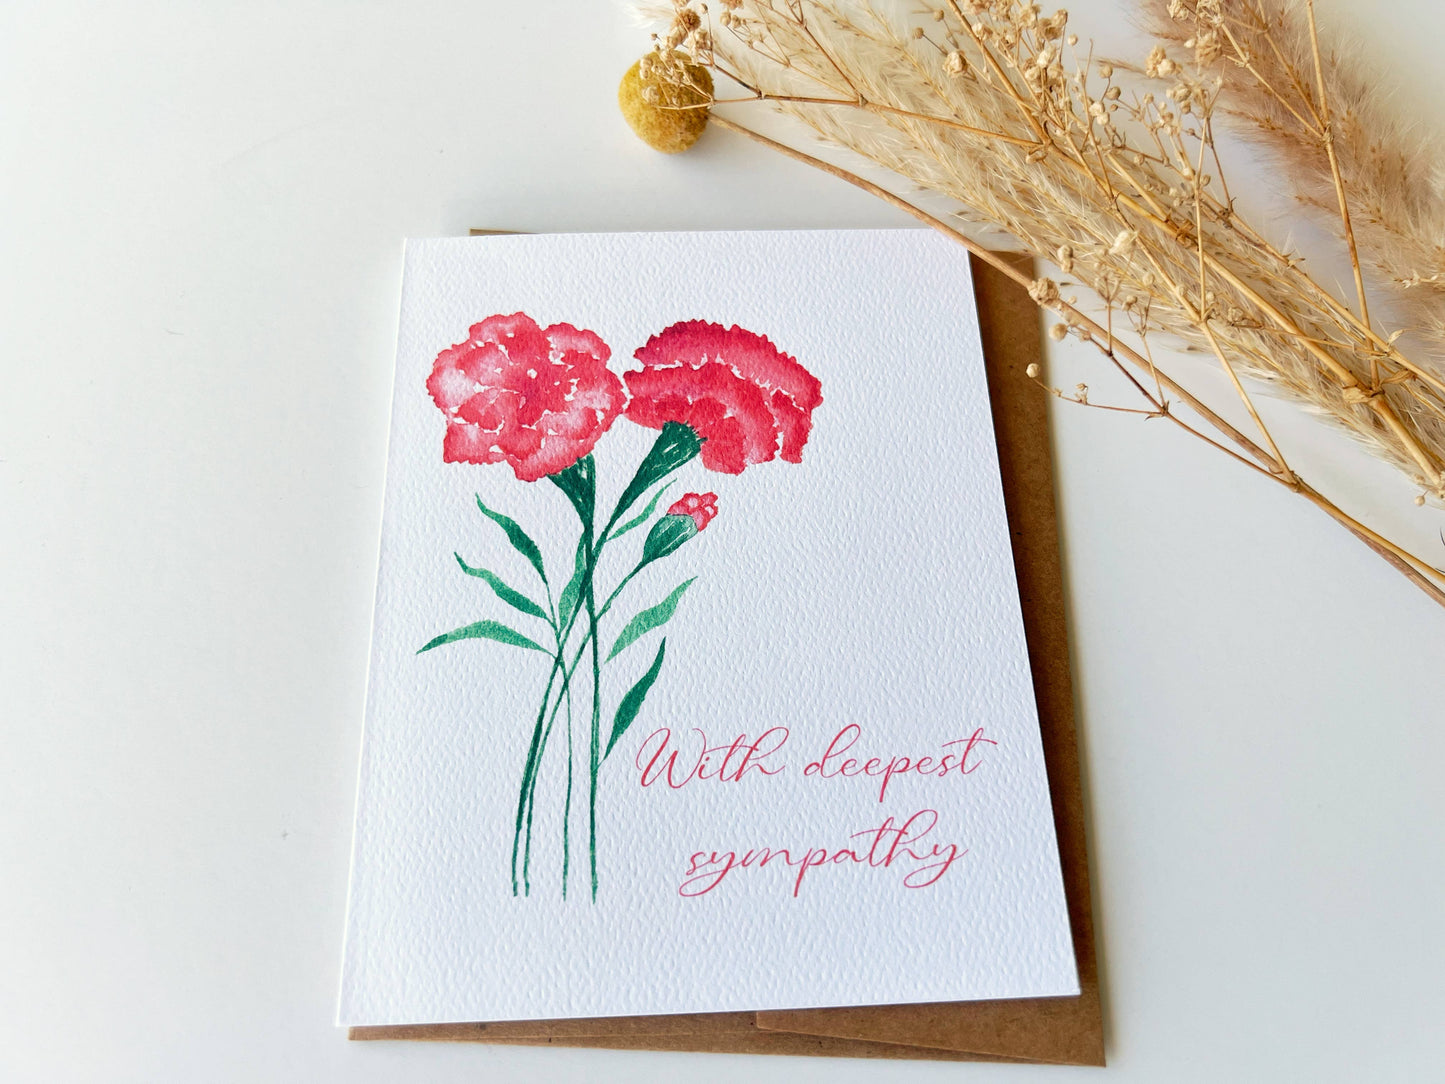 Red Carnation Sympathy Card